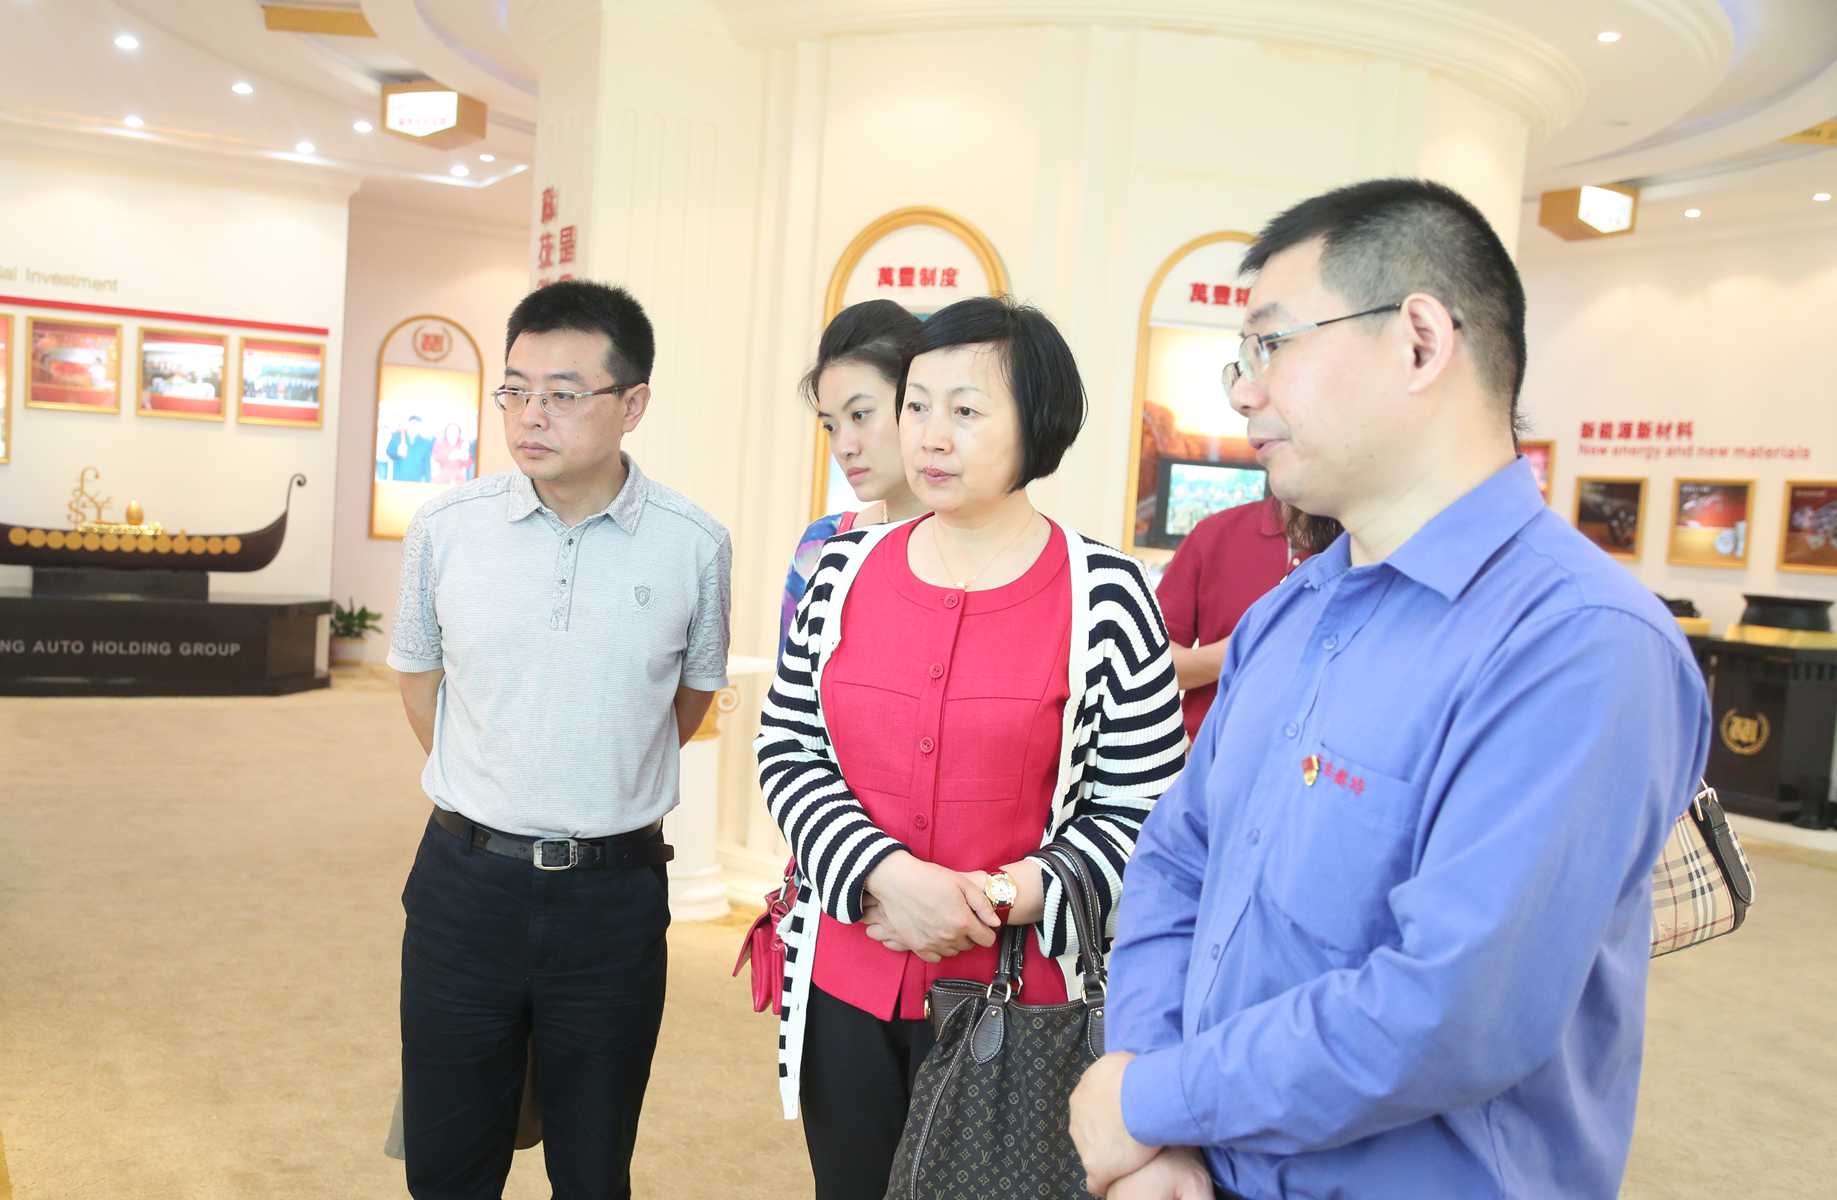 中國企業聯合會胡曉麗副理事長一行到訪尊龍凱時調研